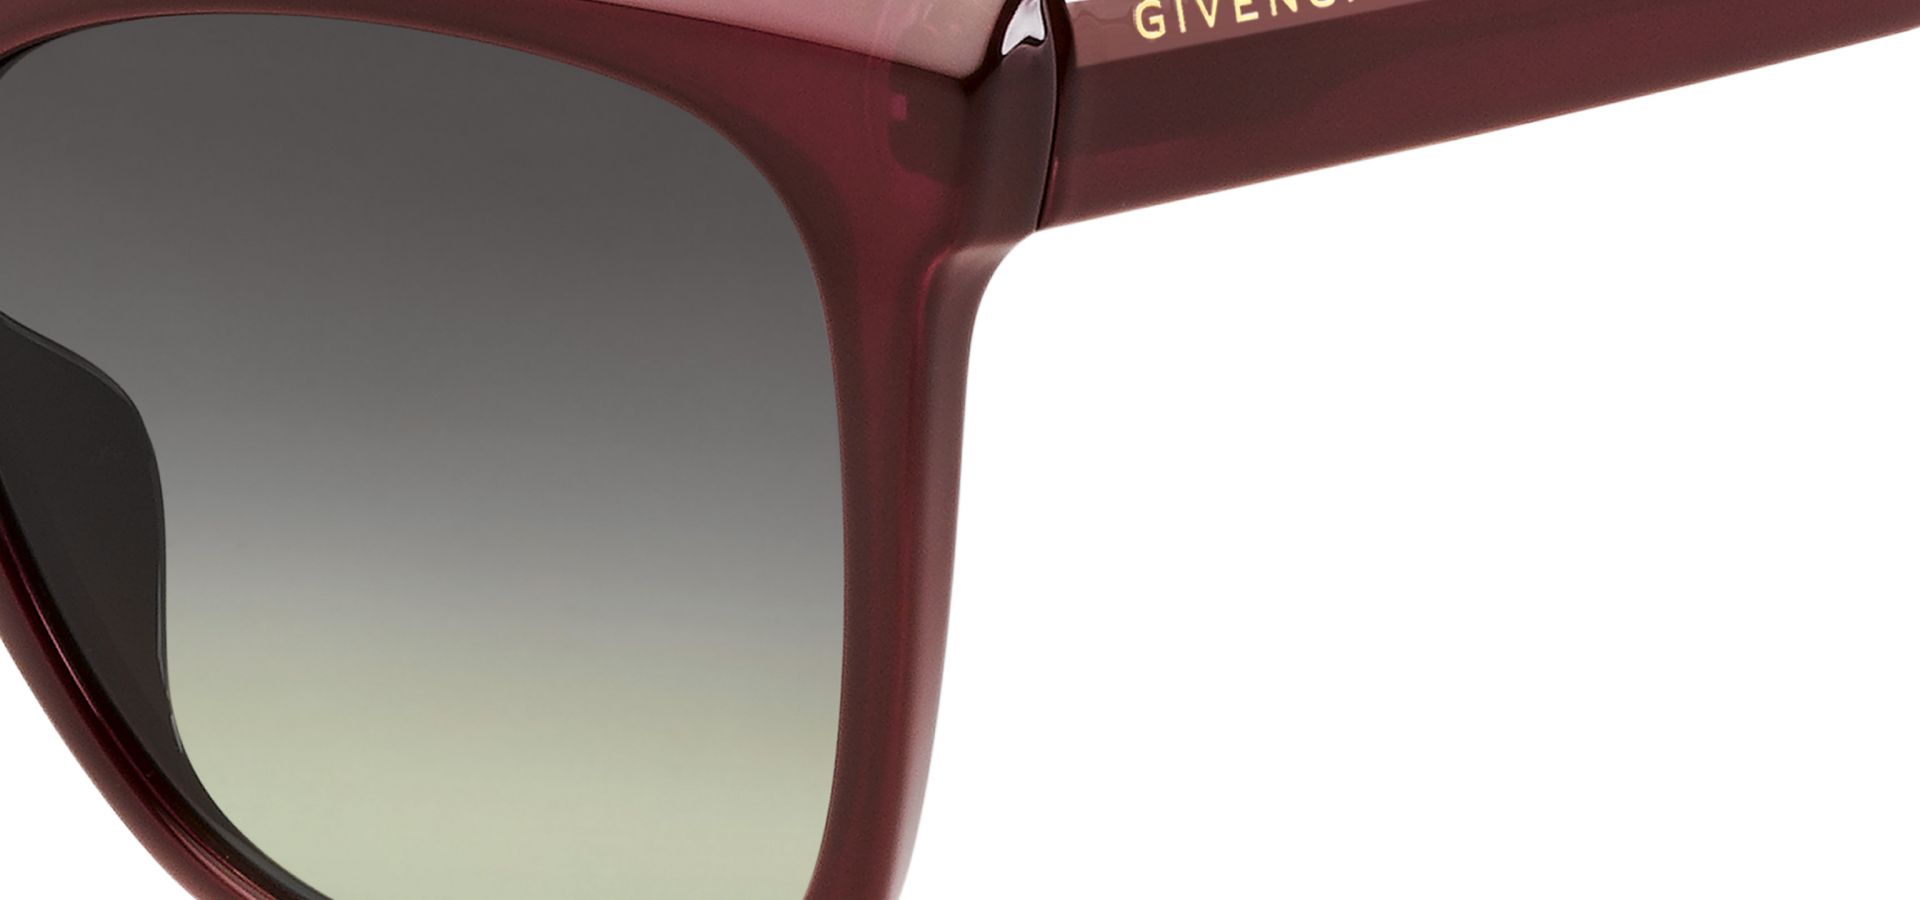 Sončna očala Givenchy GV7069: Velikost: 55/18/145, Spol: ženska, Material: acetat